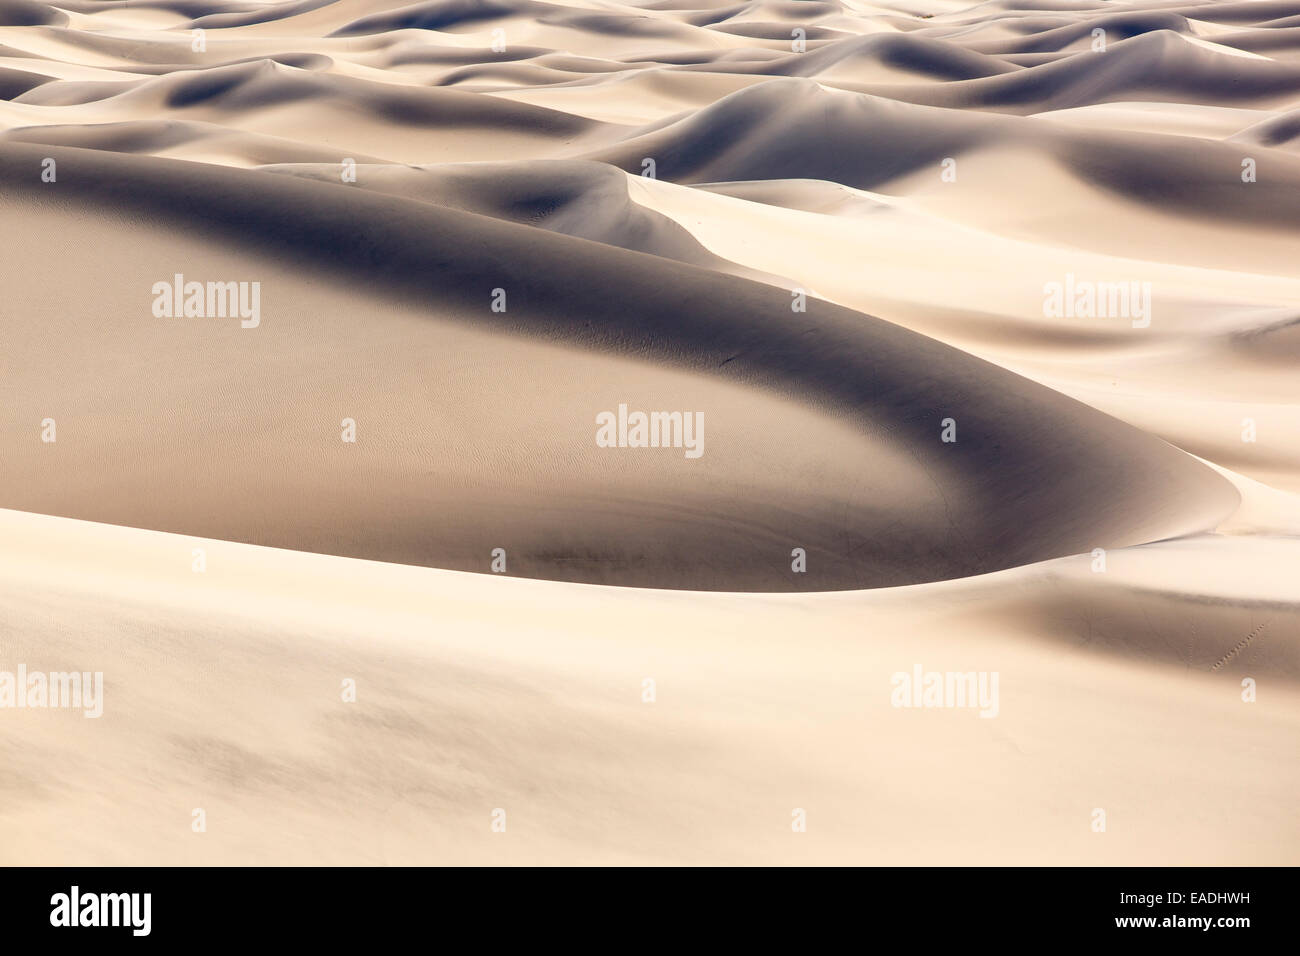 Die Mesquite flache Sanddünen im Death Valley, die den niedrigsten, heißesten und trockensten Ort in den USA, mit einer durchschnittlichen jährlichen rainf Stockfoto